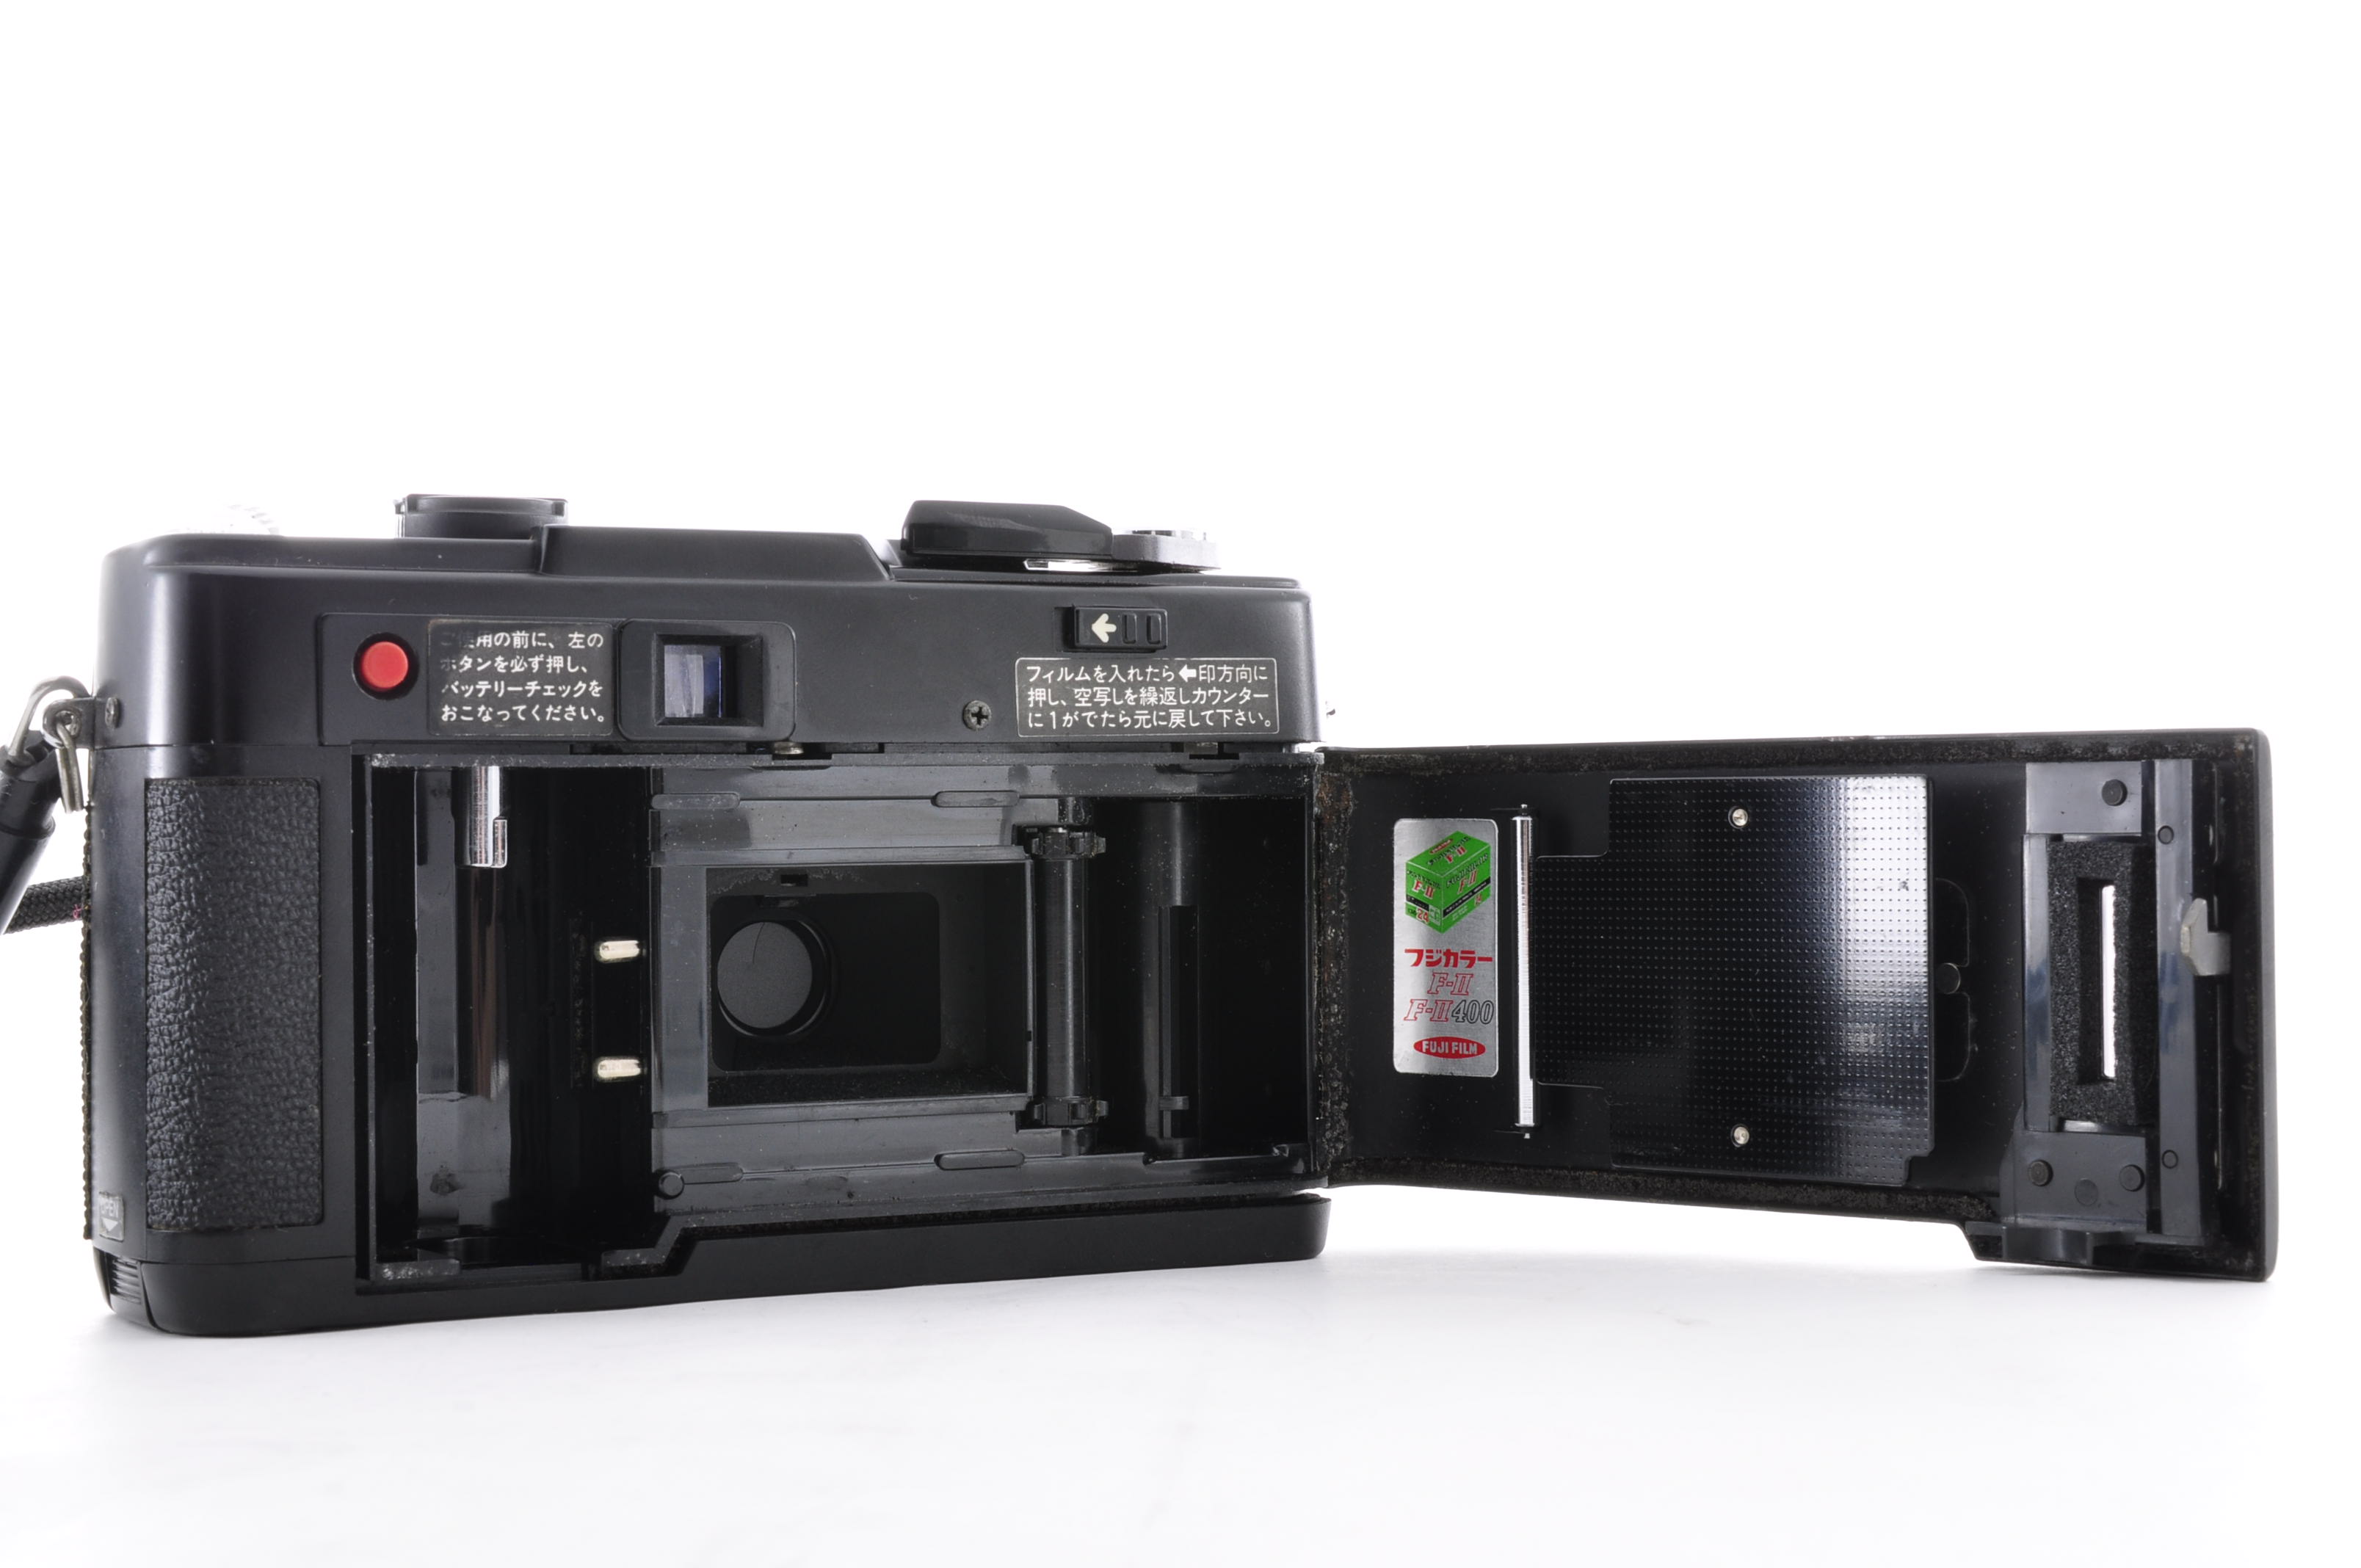 Fuji Fujifilm Flash Fujica Date Rangefinder 35mm Film Camera [Near MINT] JAPAN img13